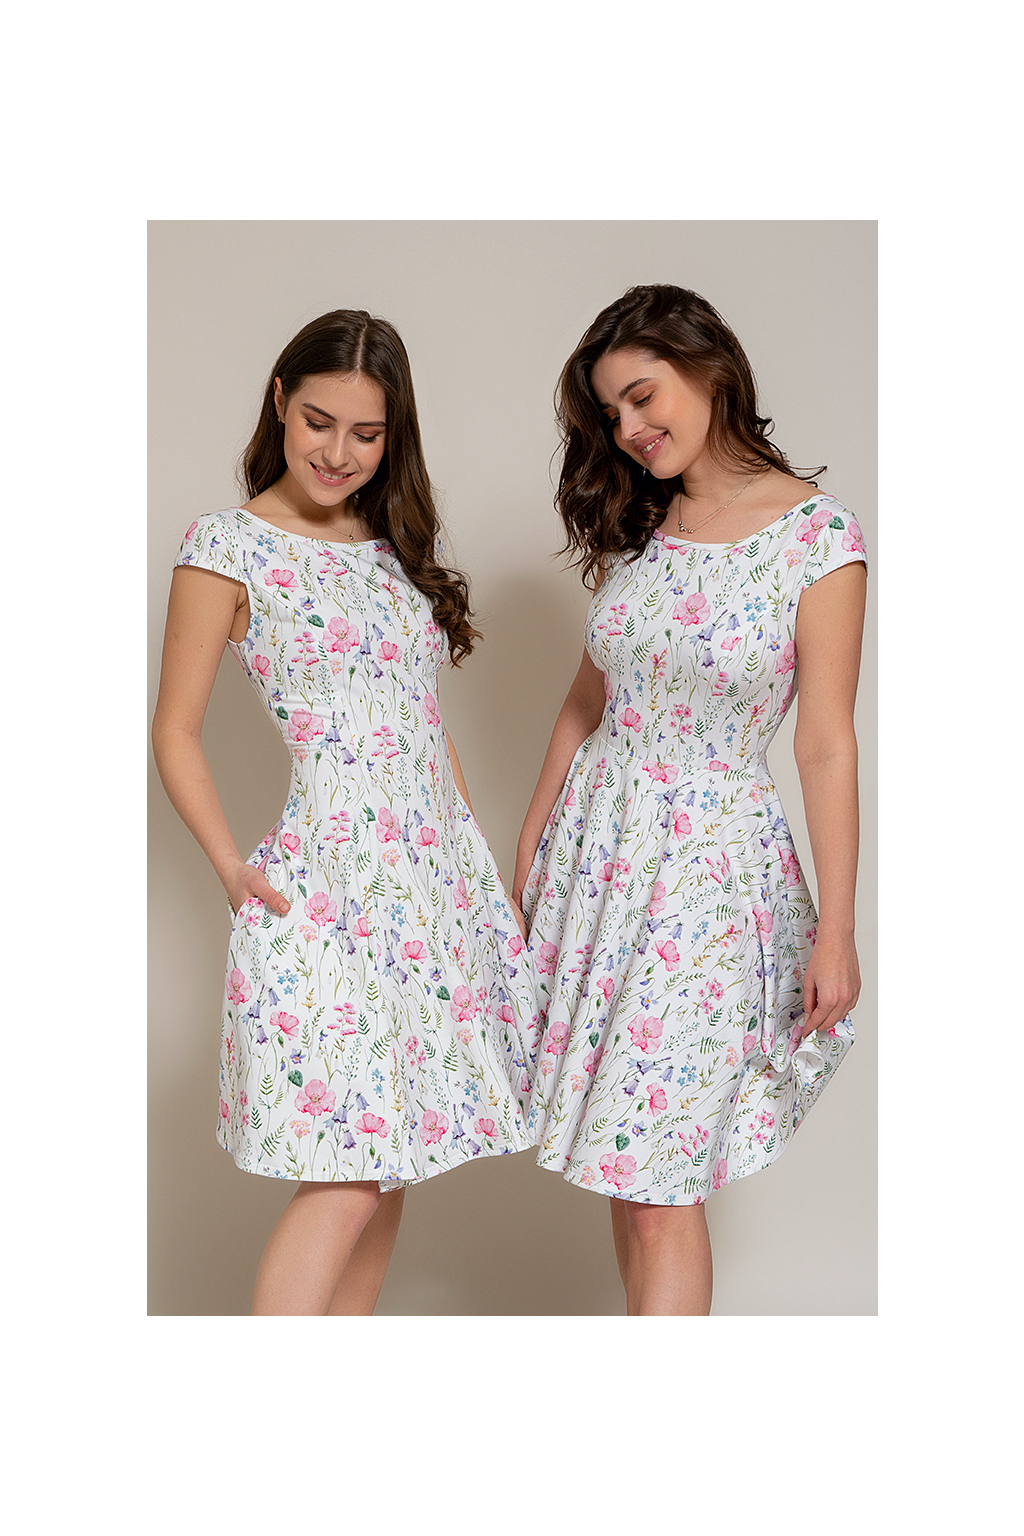 Letní úpletové šaty louka (Střih Prostřižený s kolovou sukní, Velikost Šití na míru - příplatek + 300Kč)